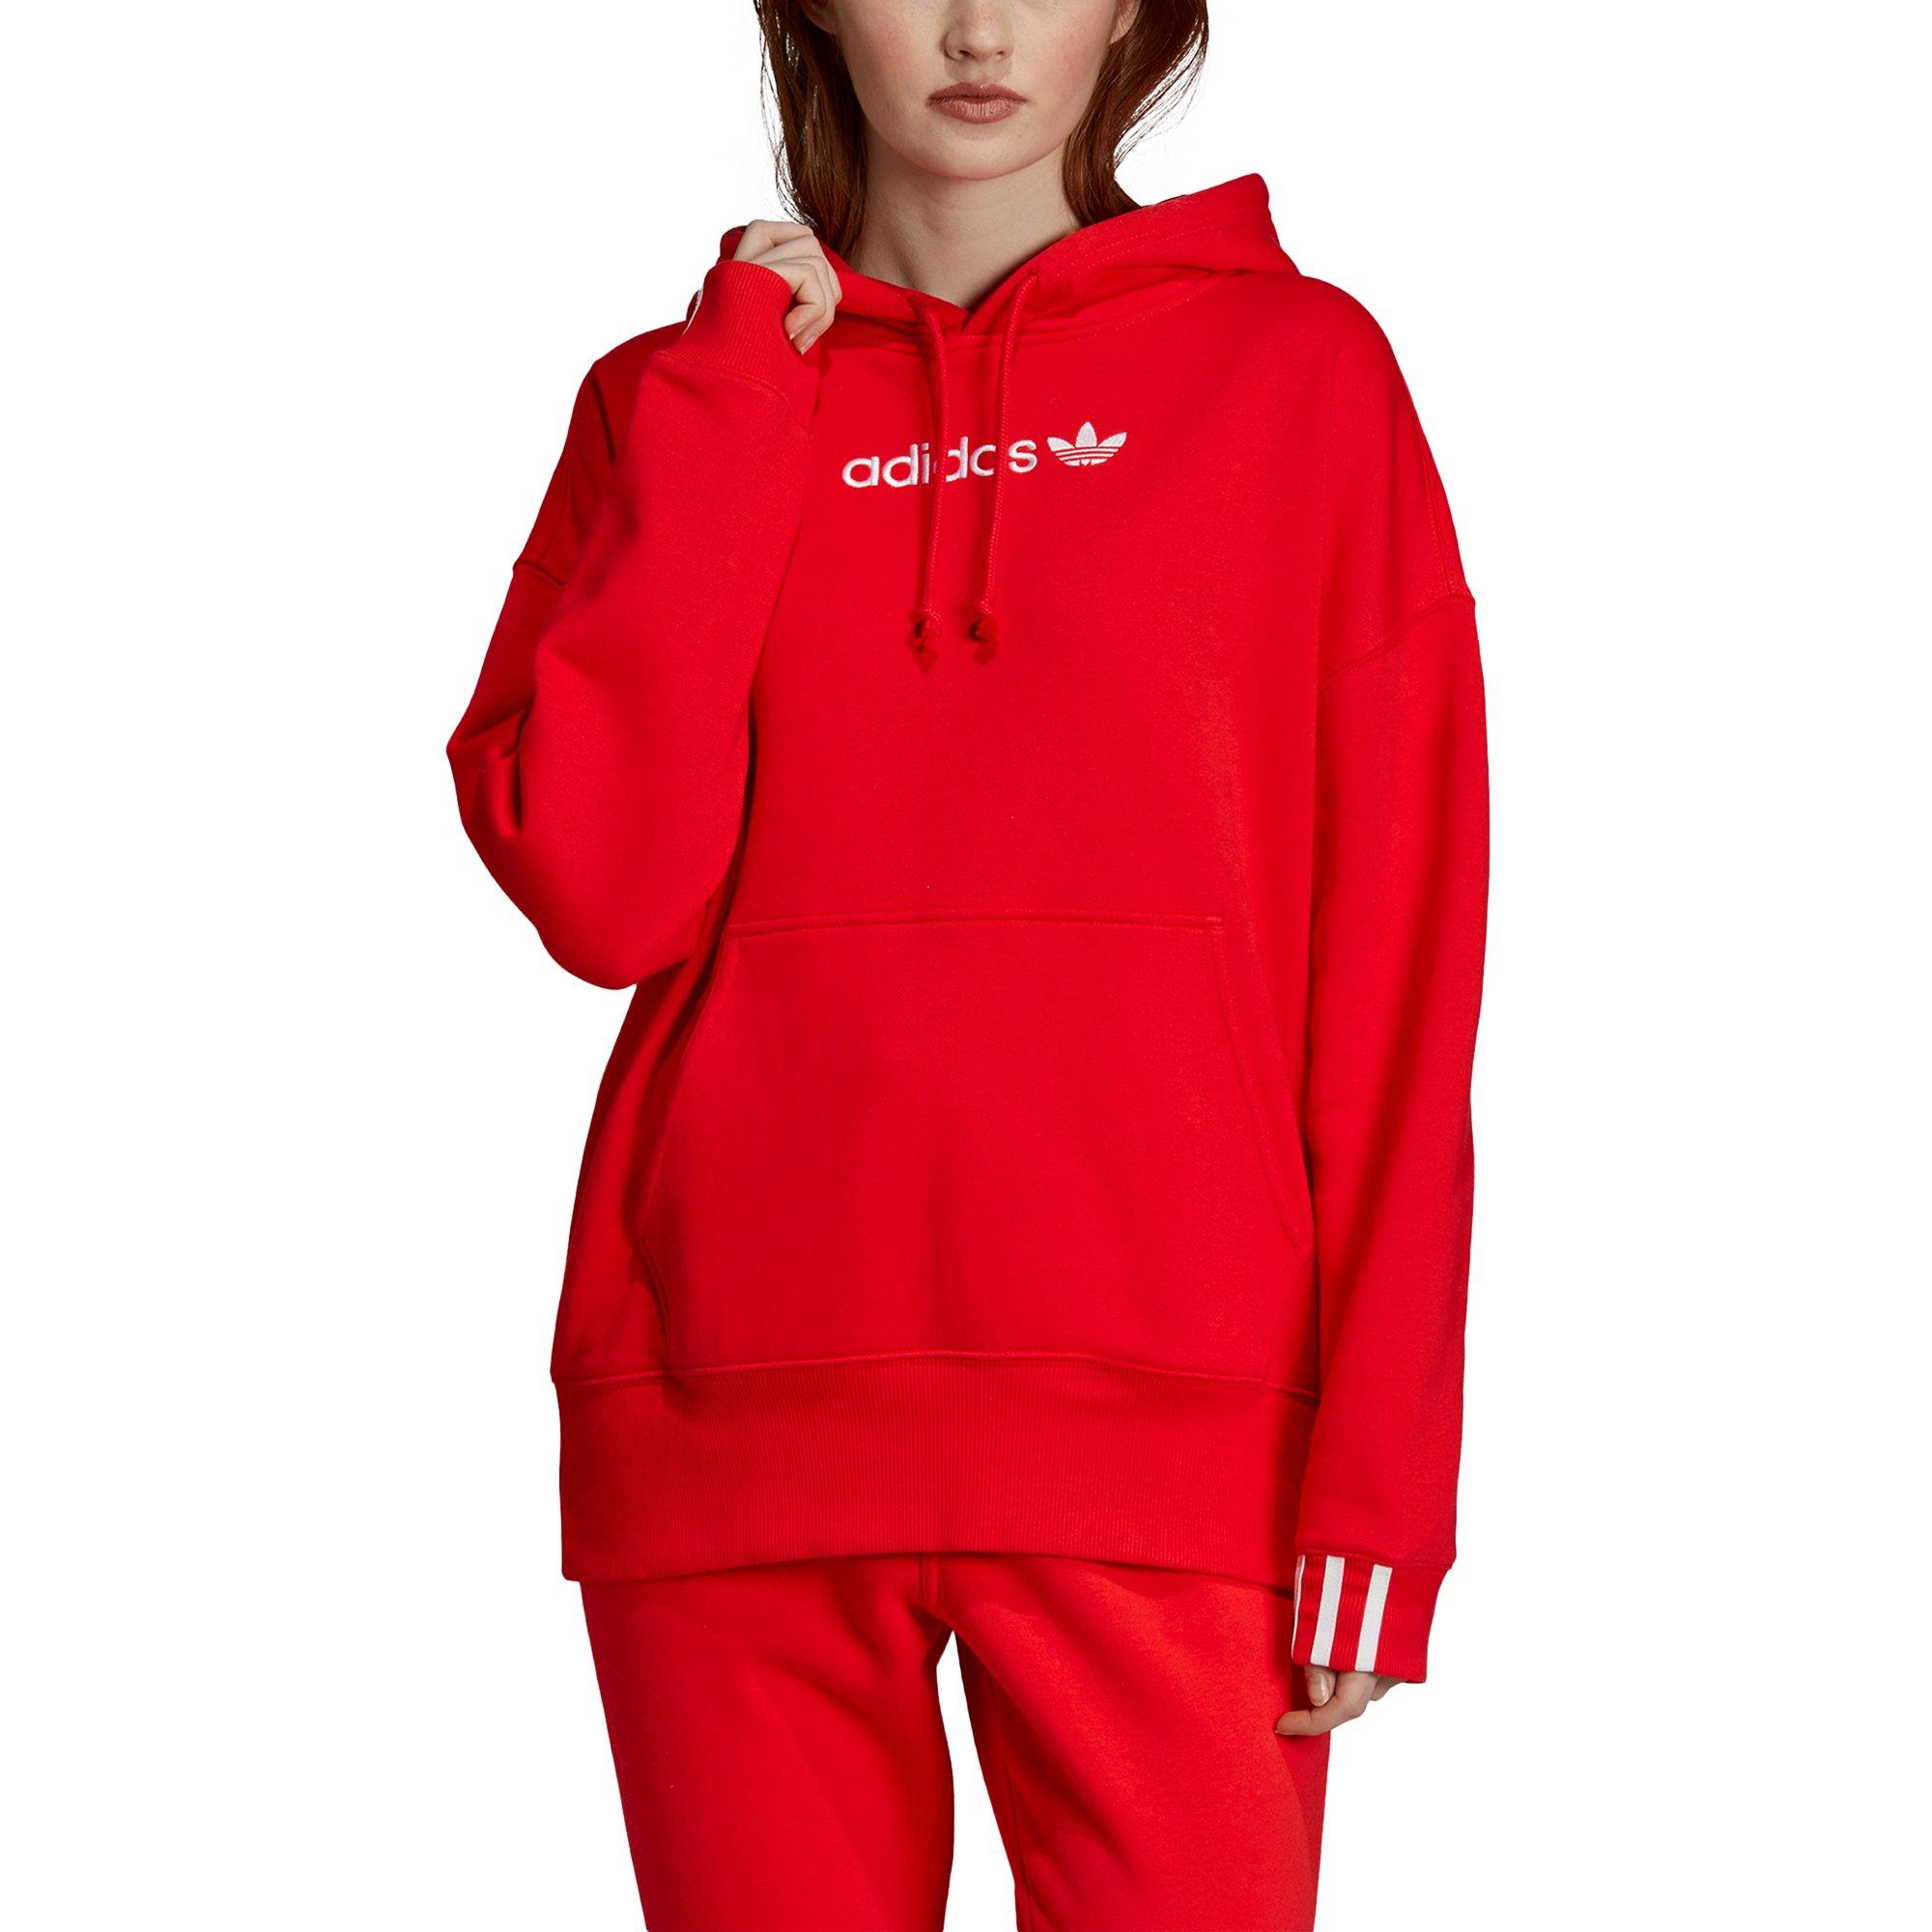 women's red adidas sweatshirt